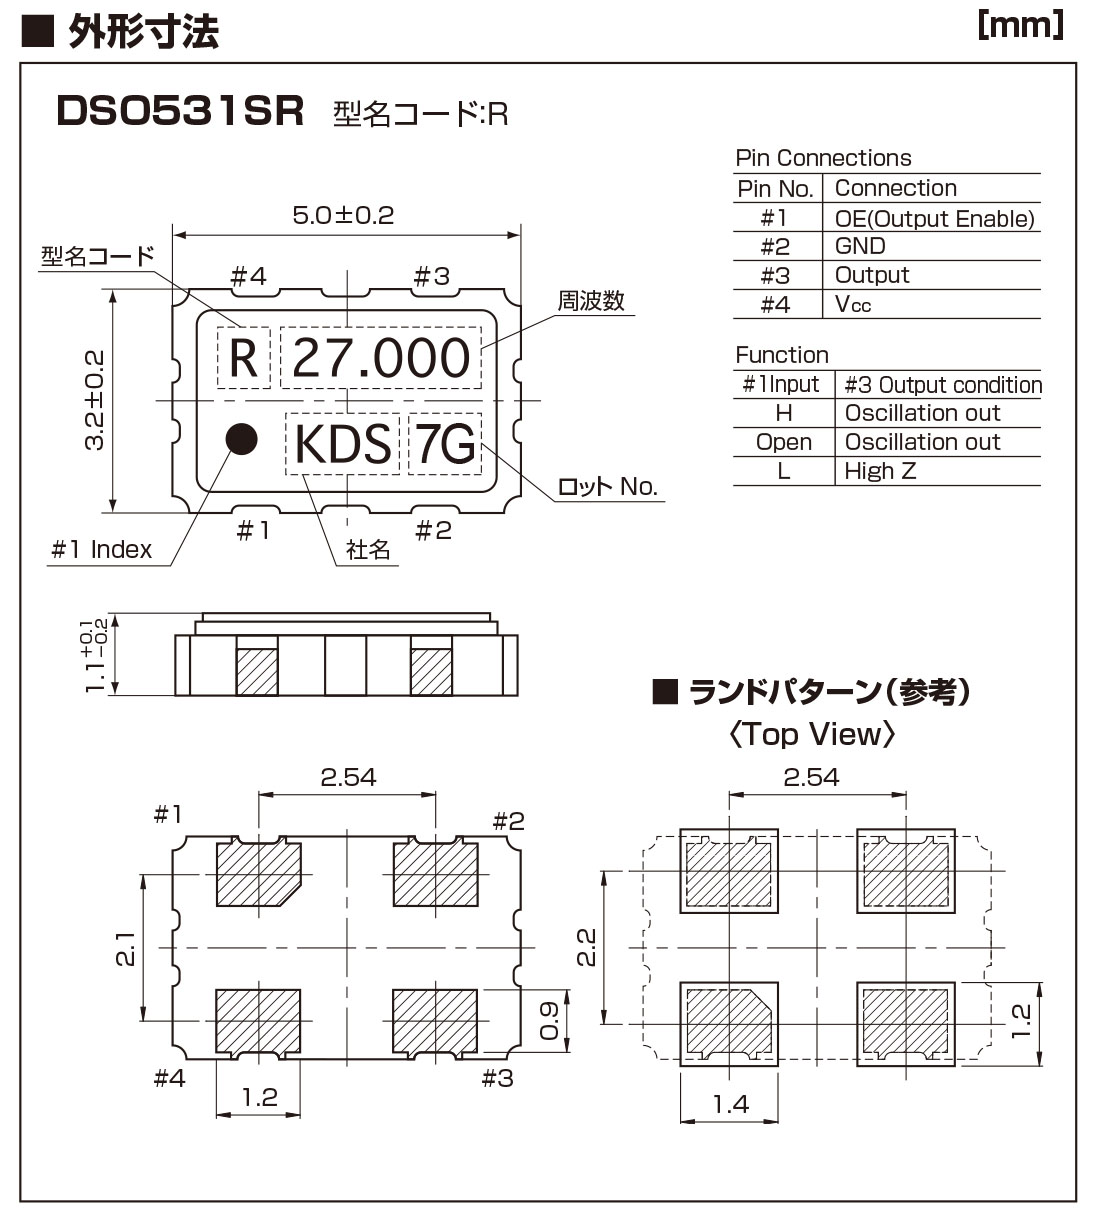 DSO531SR晶振规格书中.jpg